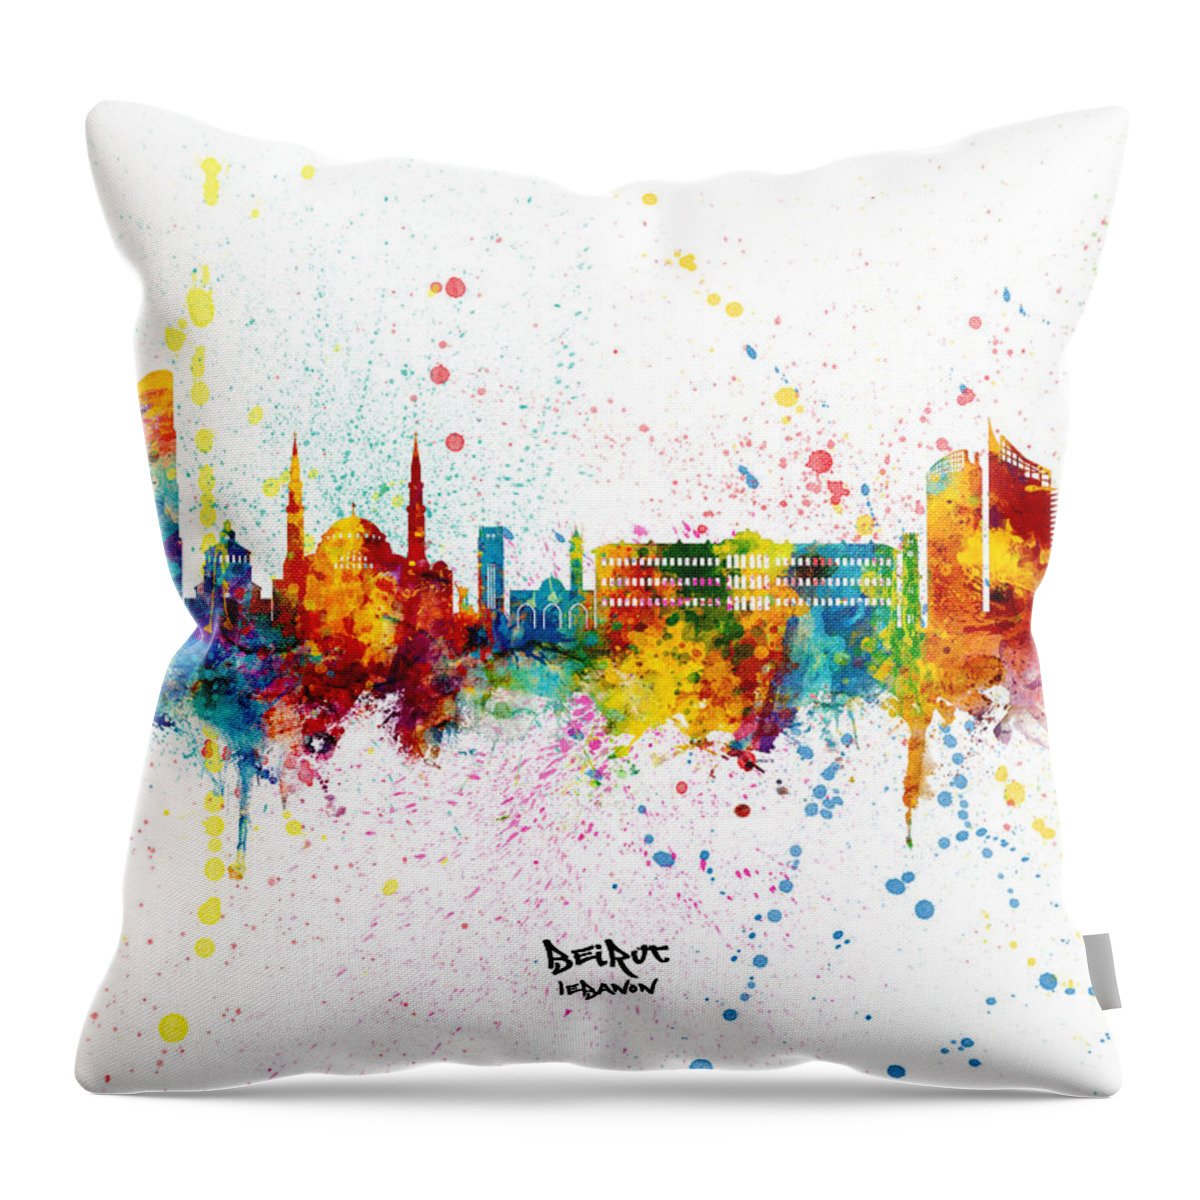 Beirut Throw Pillow featuring the digital art Beirut Lebanon Skyline by Michael Tompsett